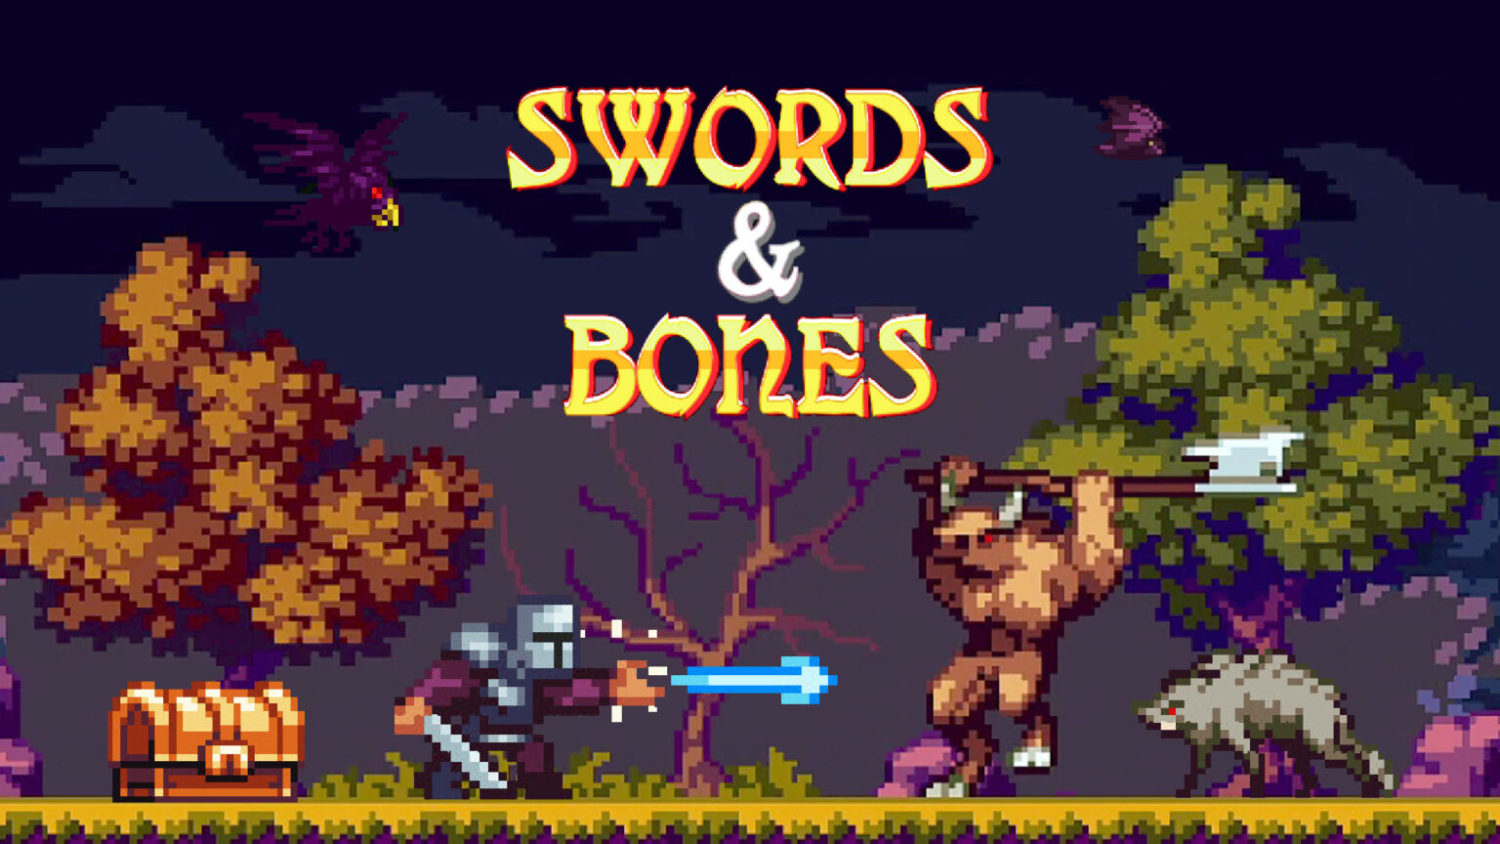 Swords & Bones - Nintendo Switch